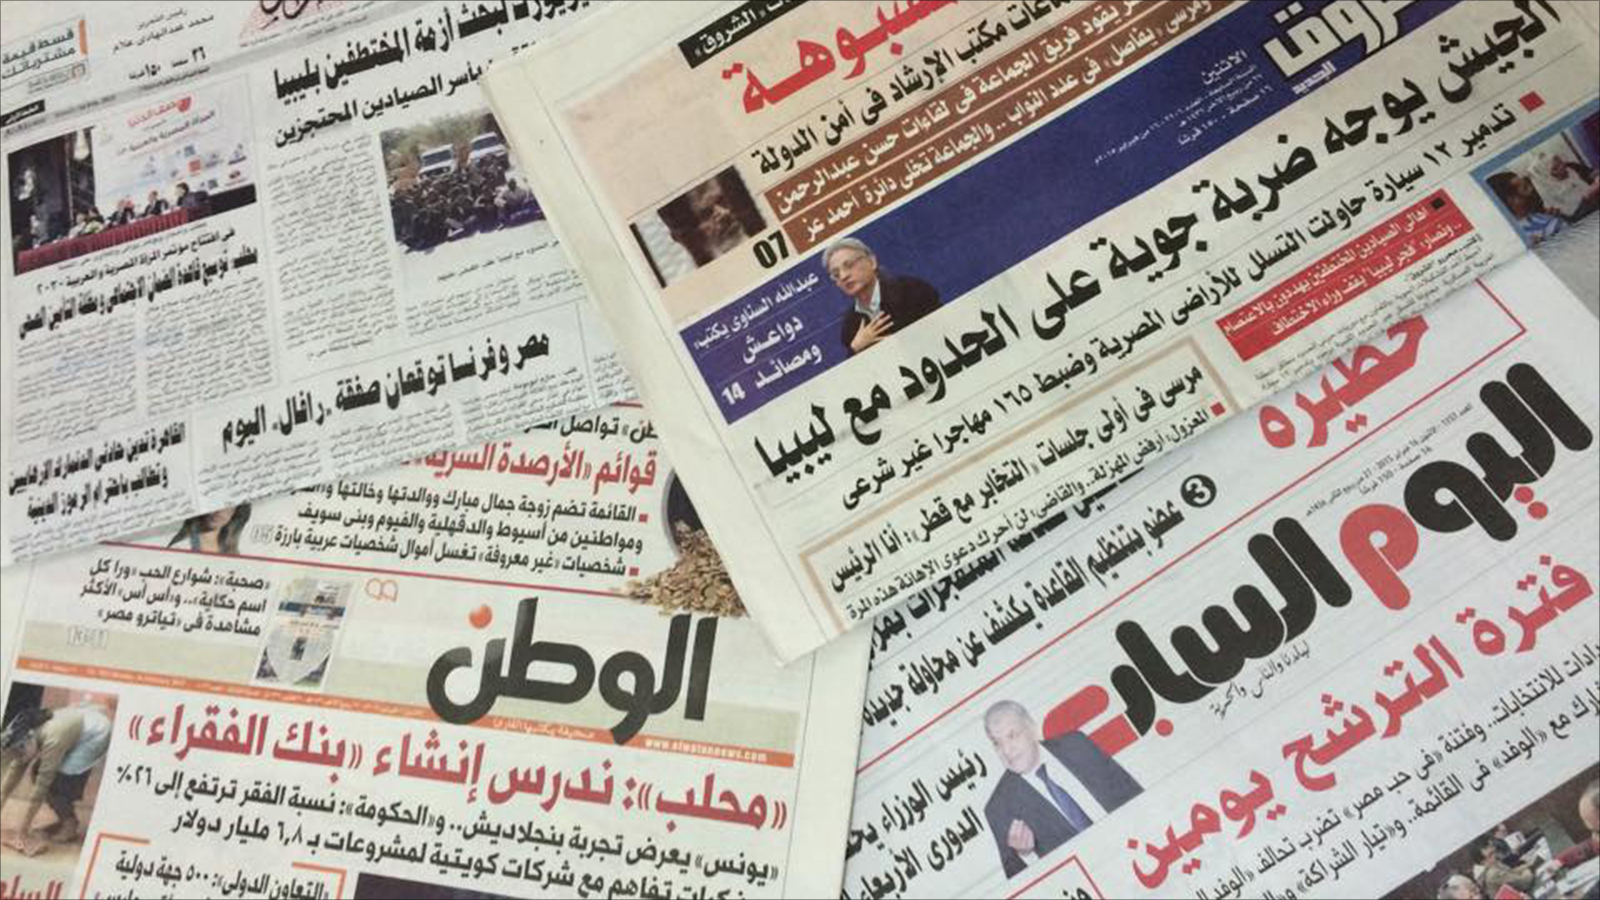 عدد من الصحف المصرية اتهمت إدارة المهرجان باستغلال اسمها وأكدت أنها ستلجأ إلى القضاء (الجزيرة)